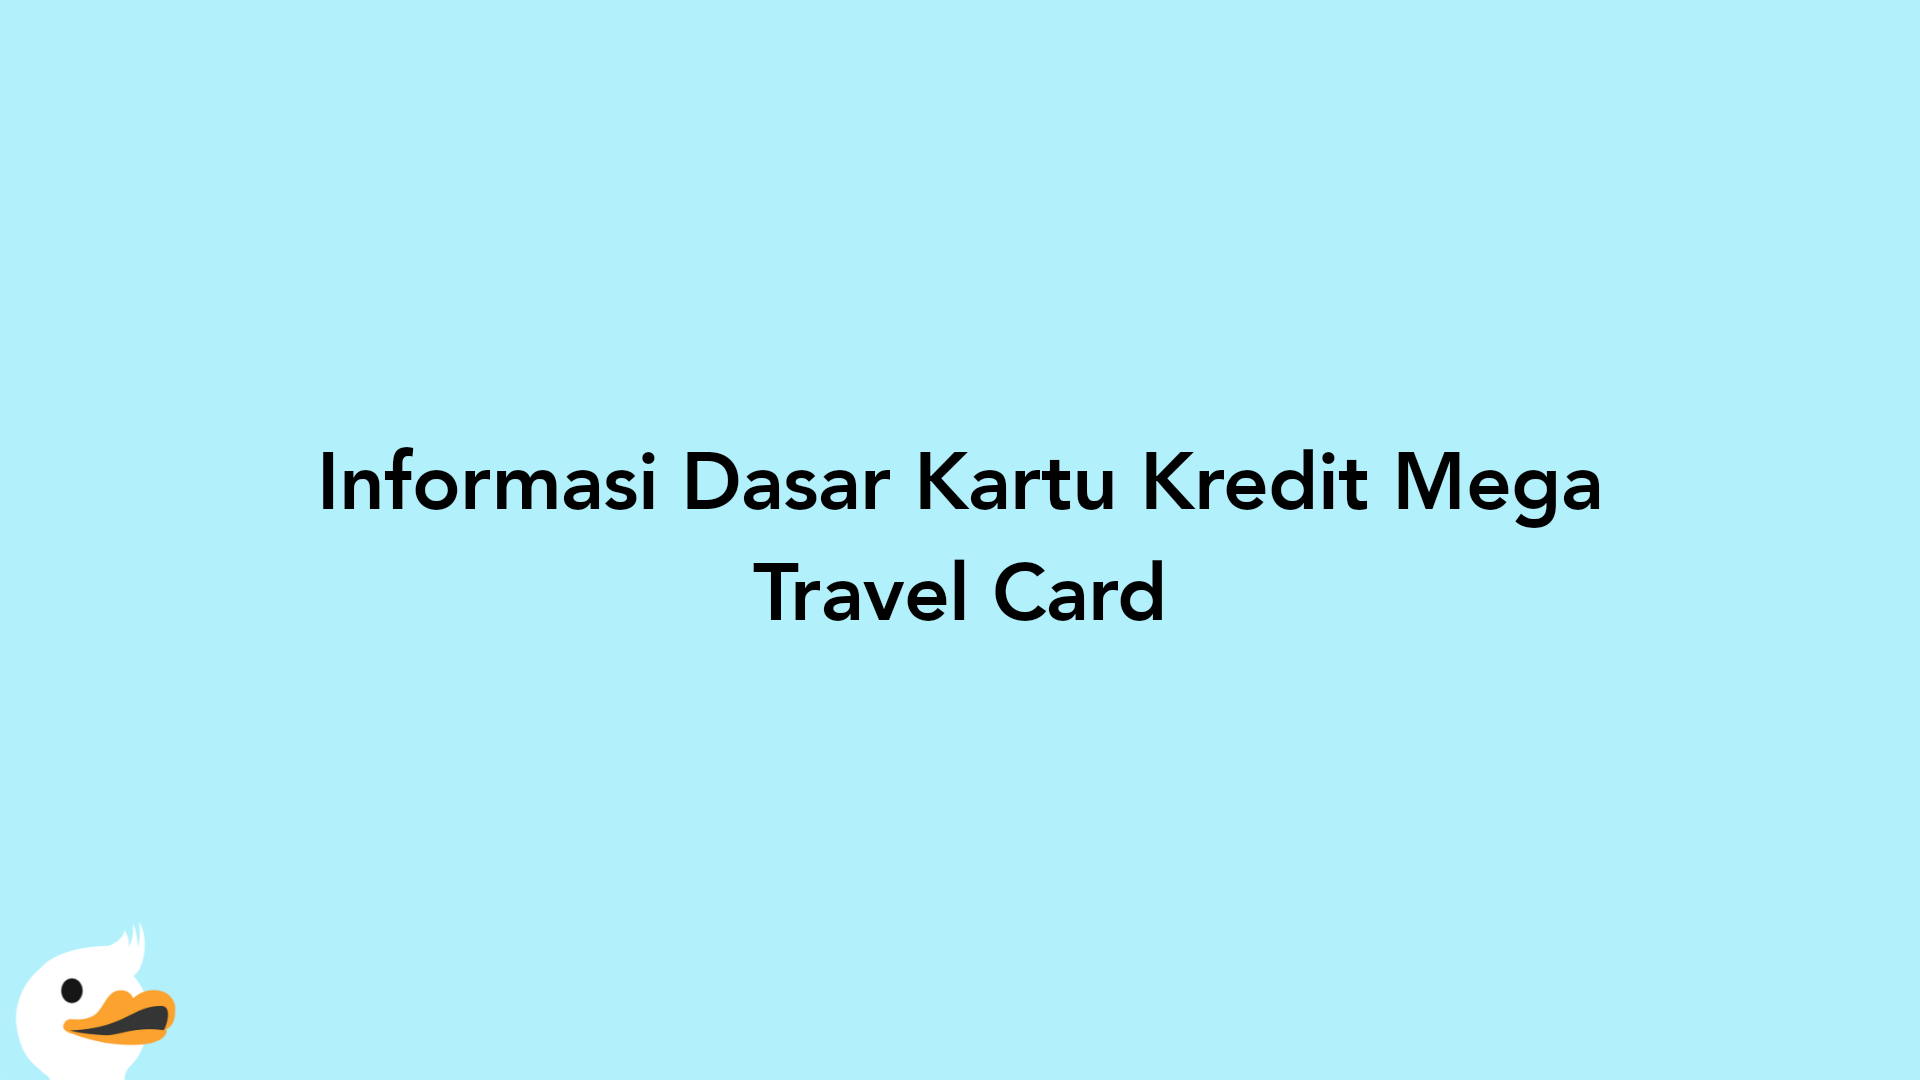 Informasi Dasar Kartu Kredit Mega Travel Card